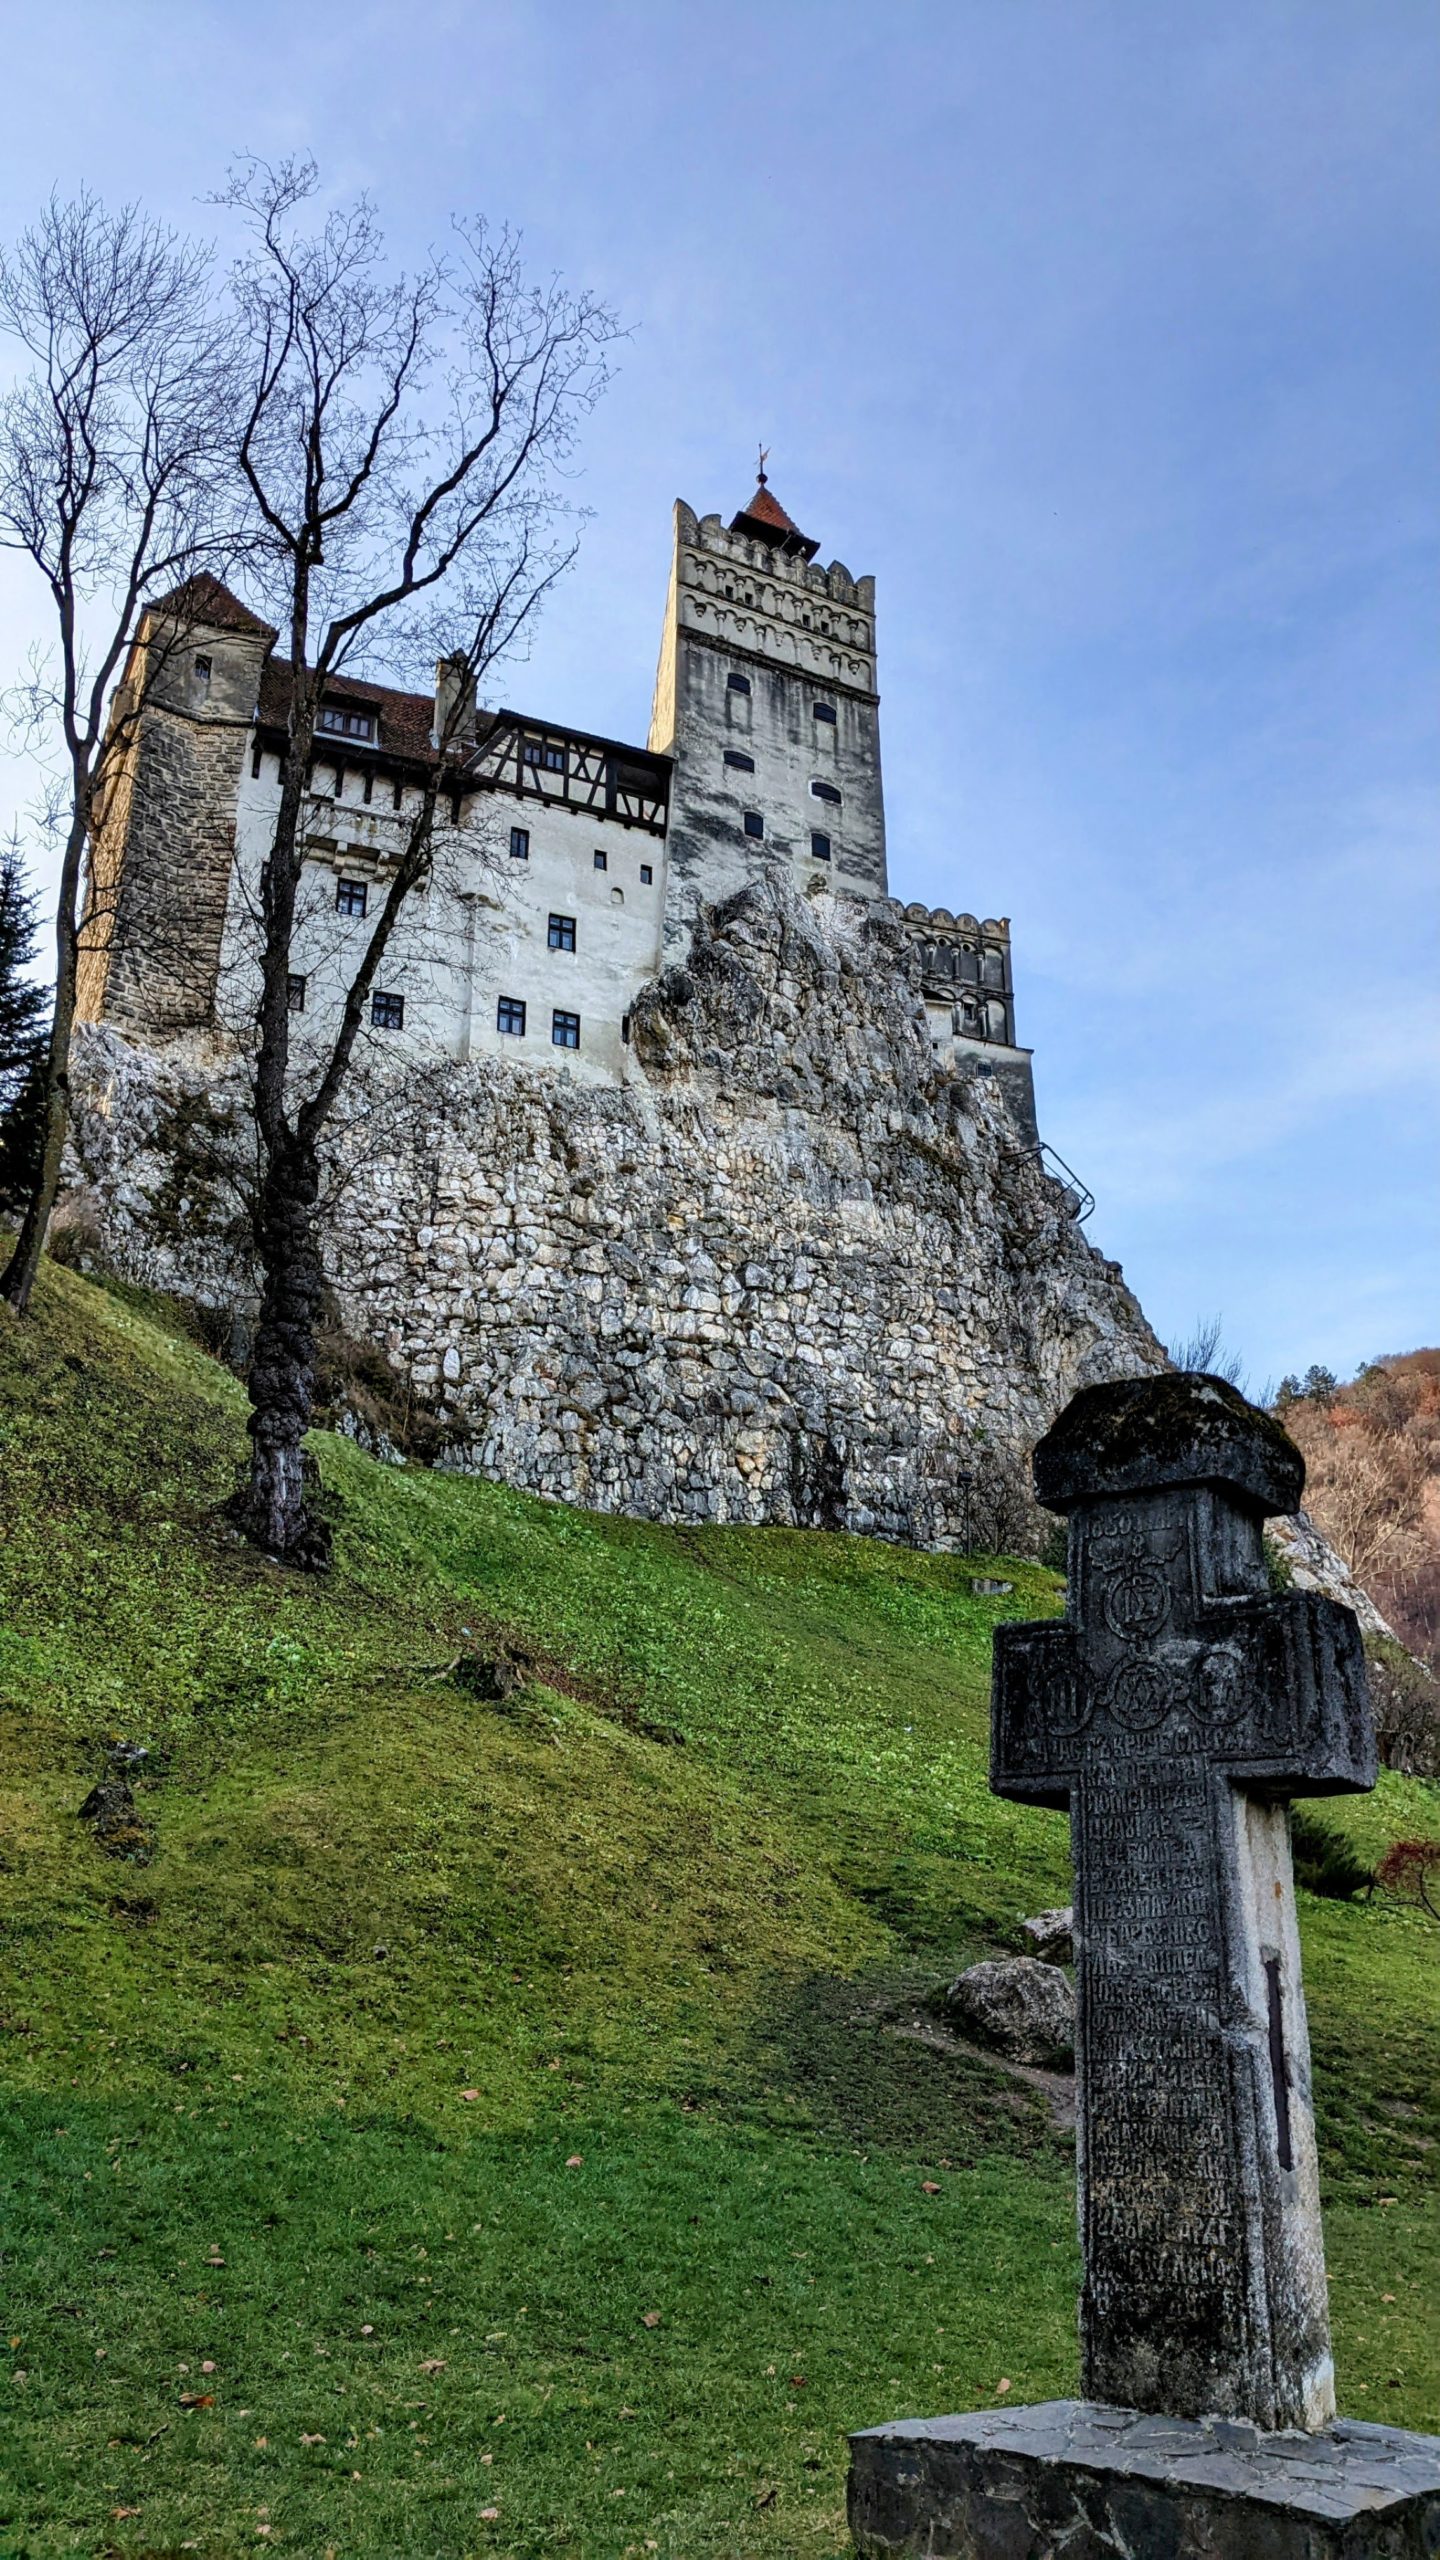 Le Château de Bran, ou le château de Dracula selon la légende